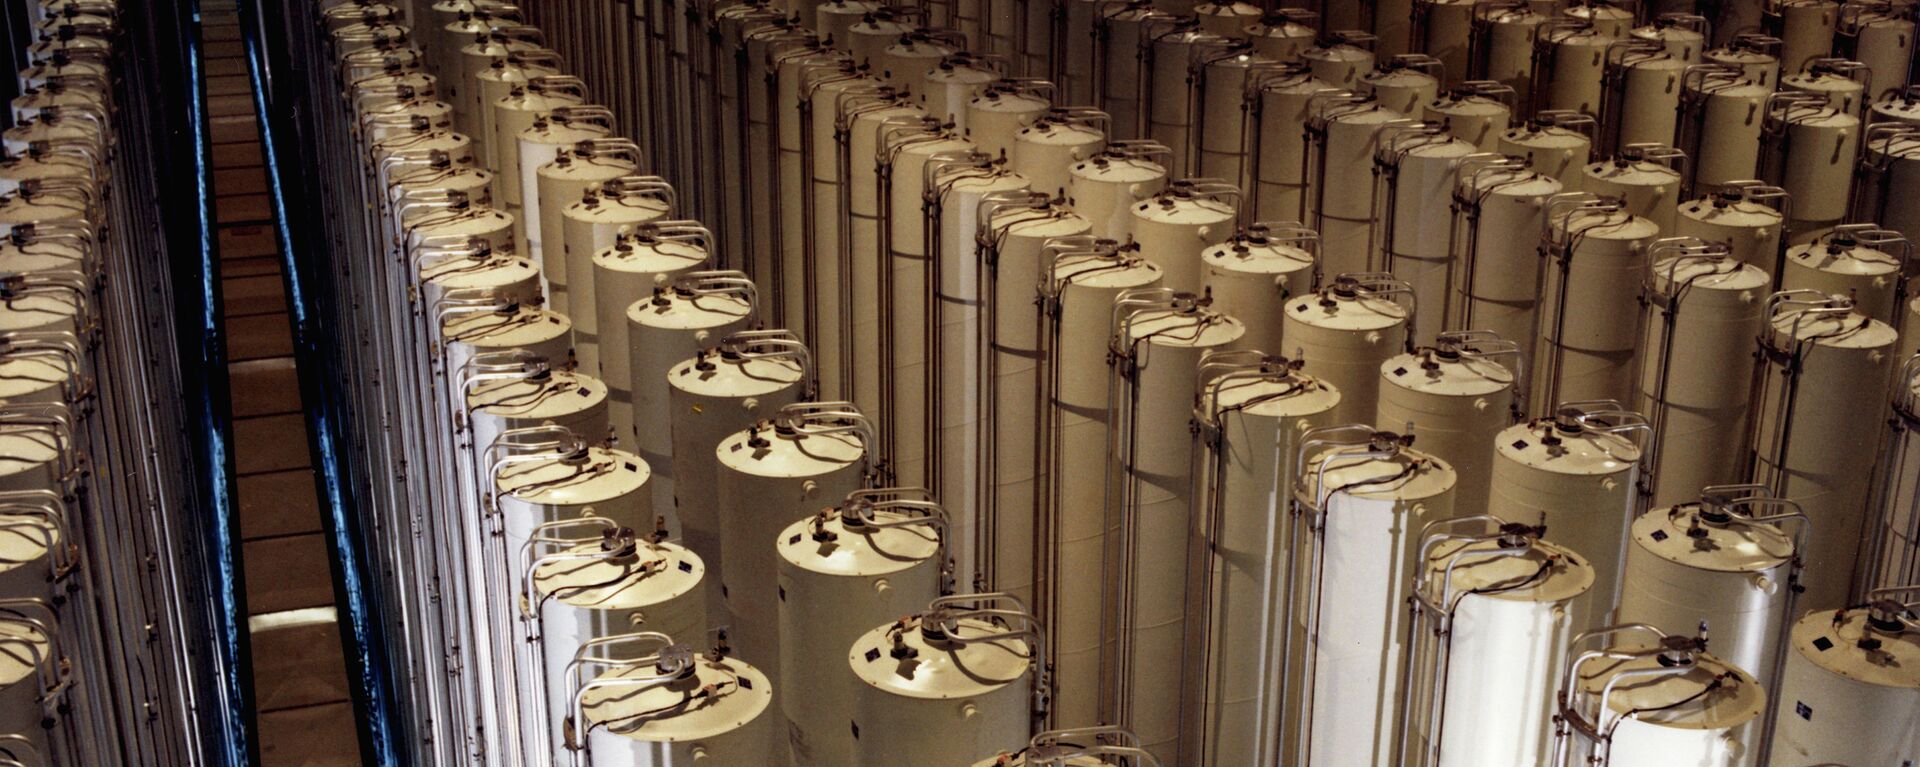 Centrifugadoras de gas para enriquecimiento de uranio (Archivo) - Sputnik Mundo, 1920, 30.03.2021